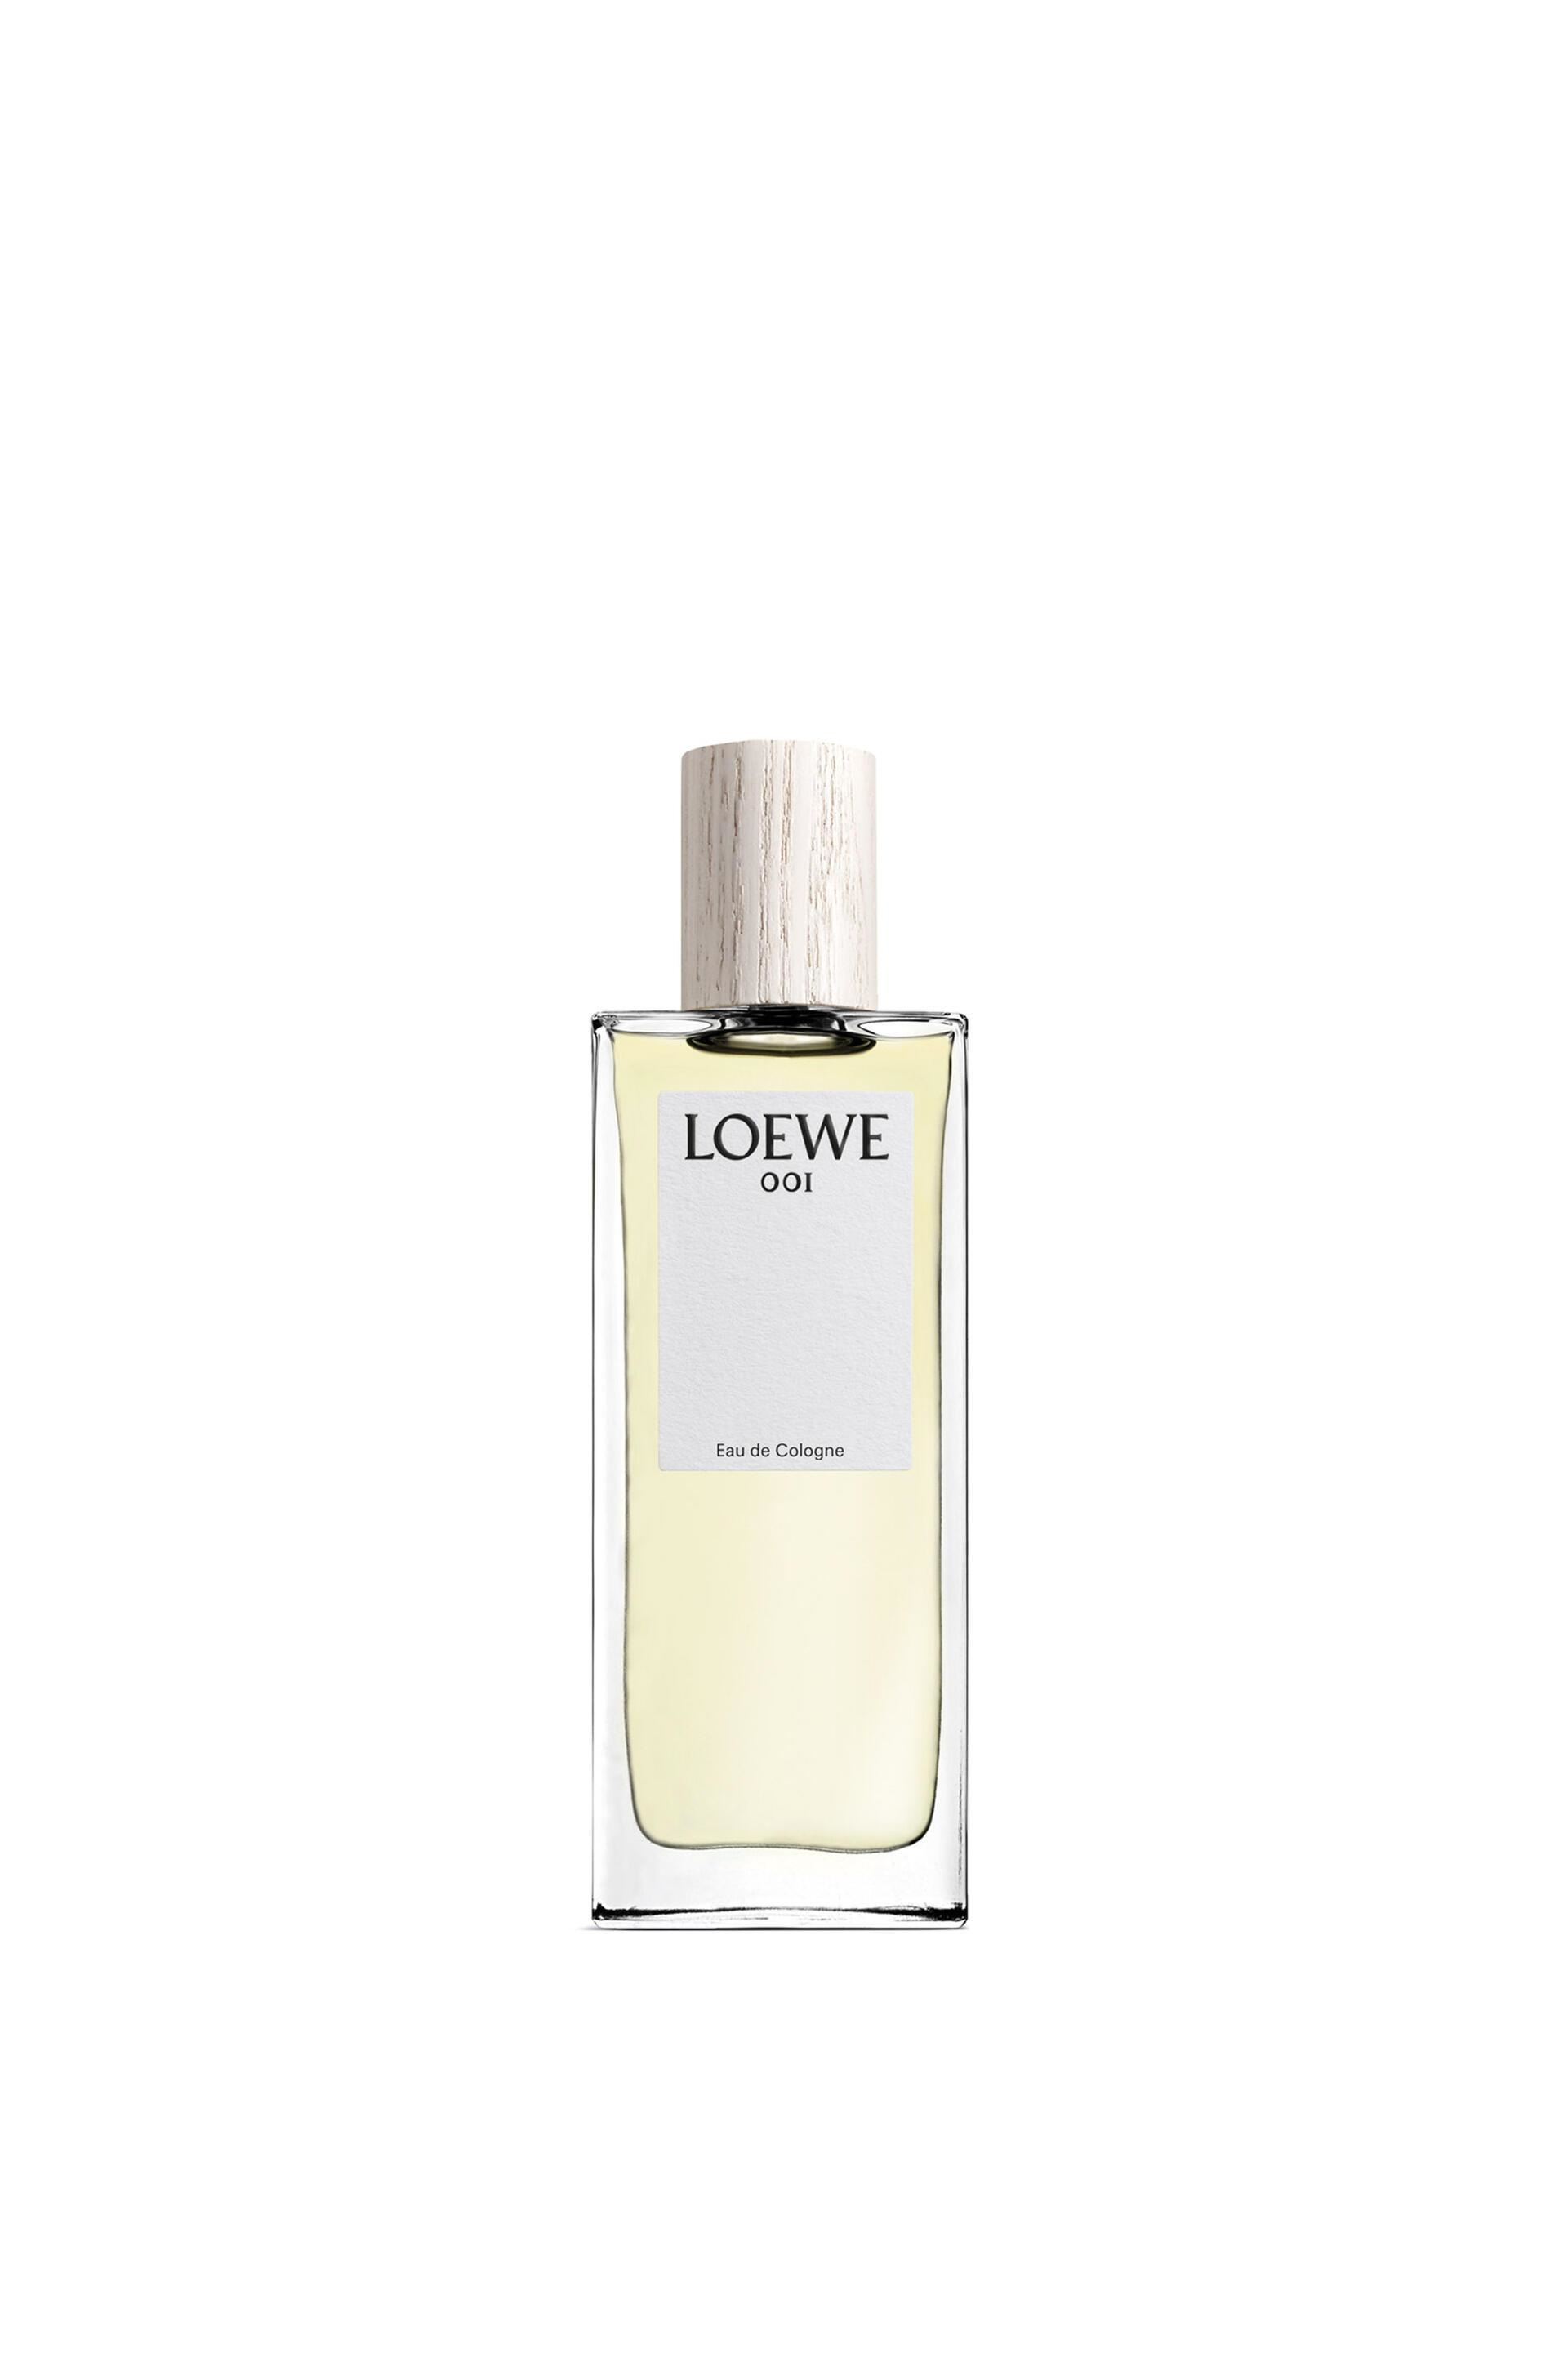 LOEWE Perfumes 001